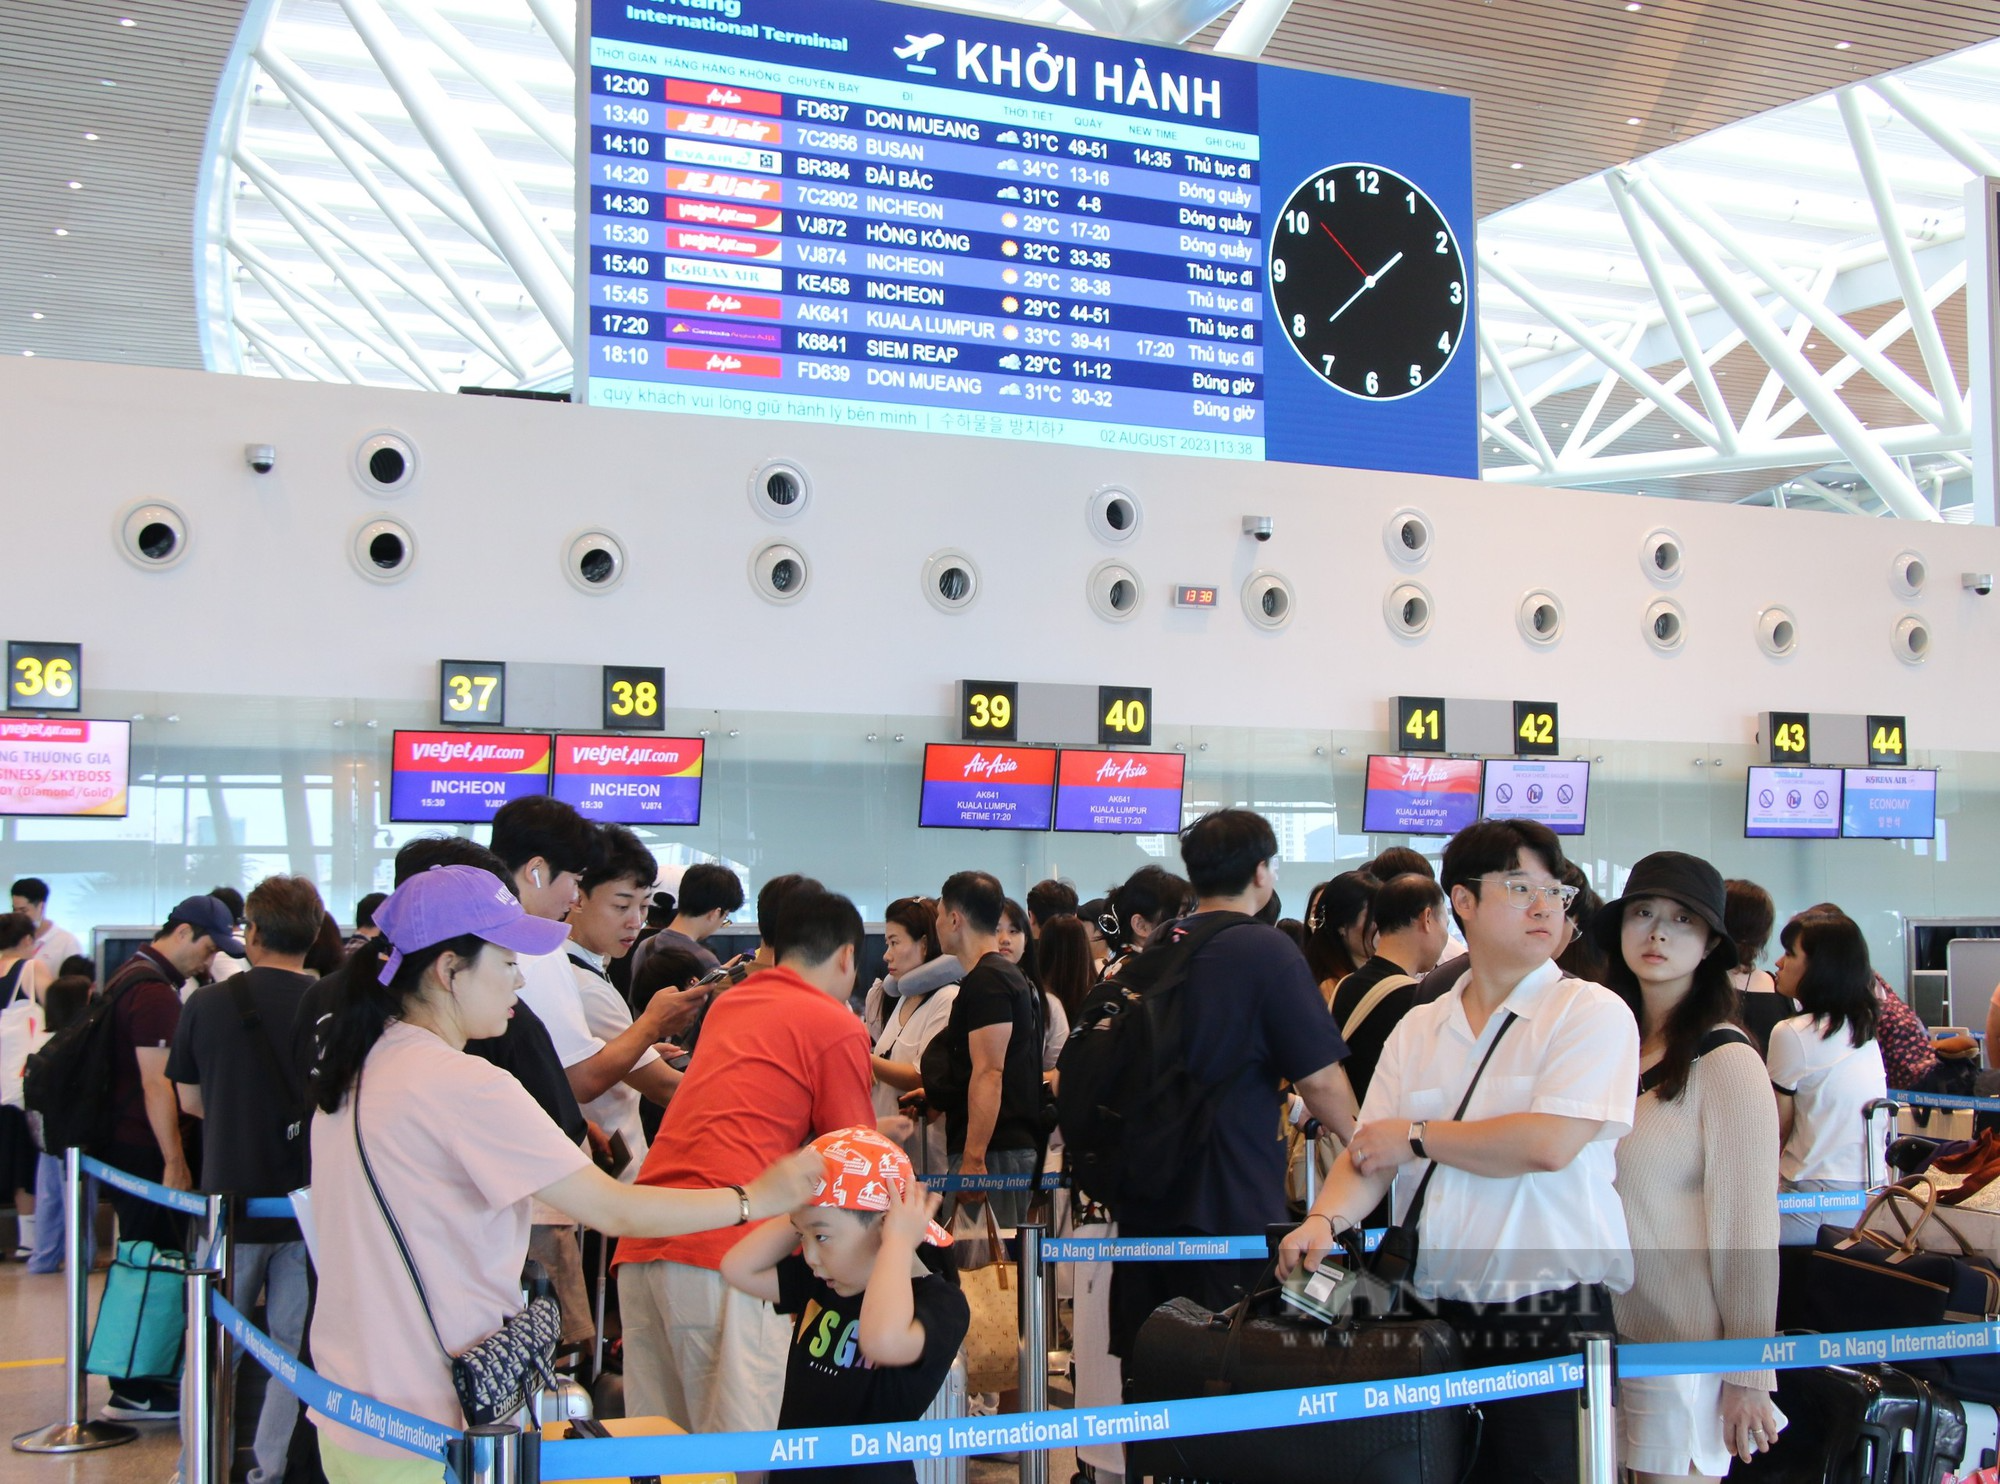 Du khách chỉ mất 2 phút để làm thủ tục chuyến bay tại Đà Nẵng - Ảnh 5.